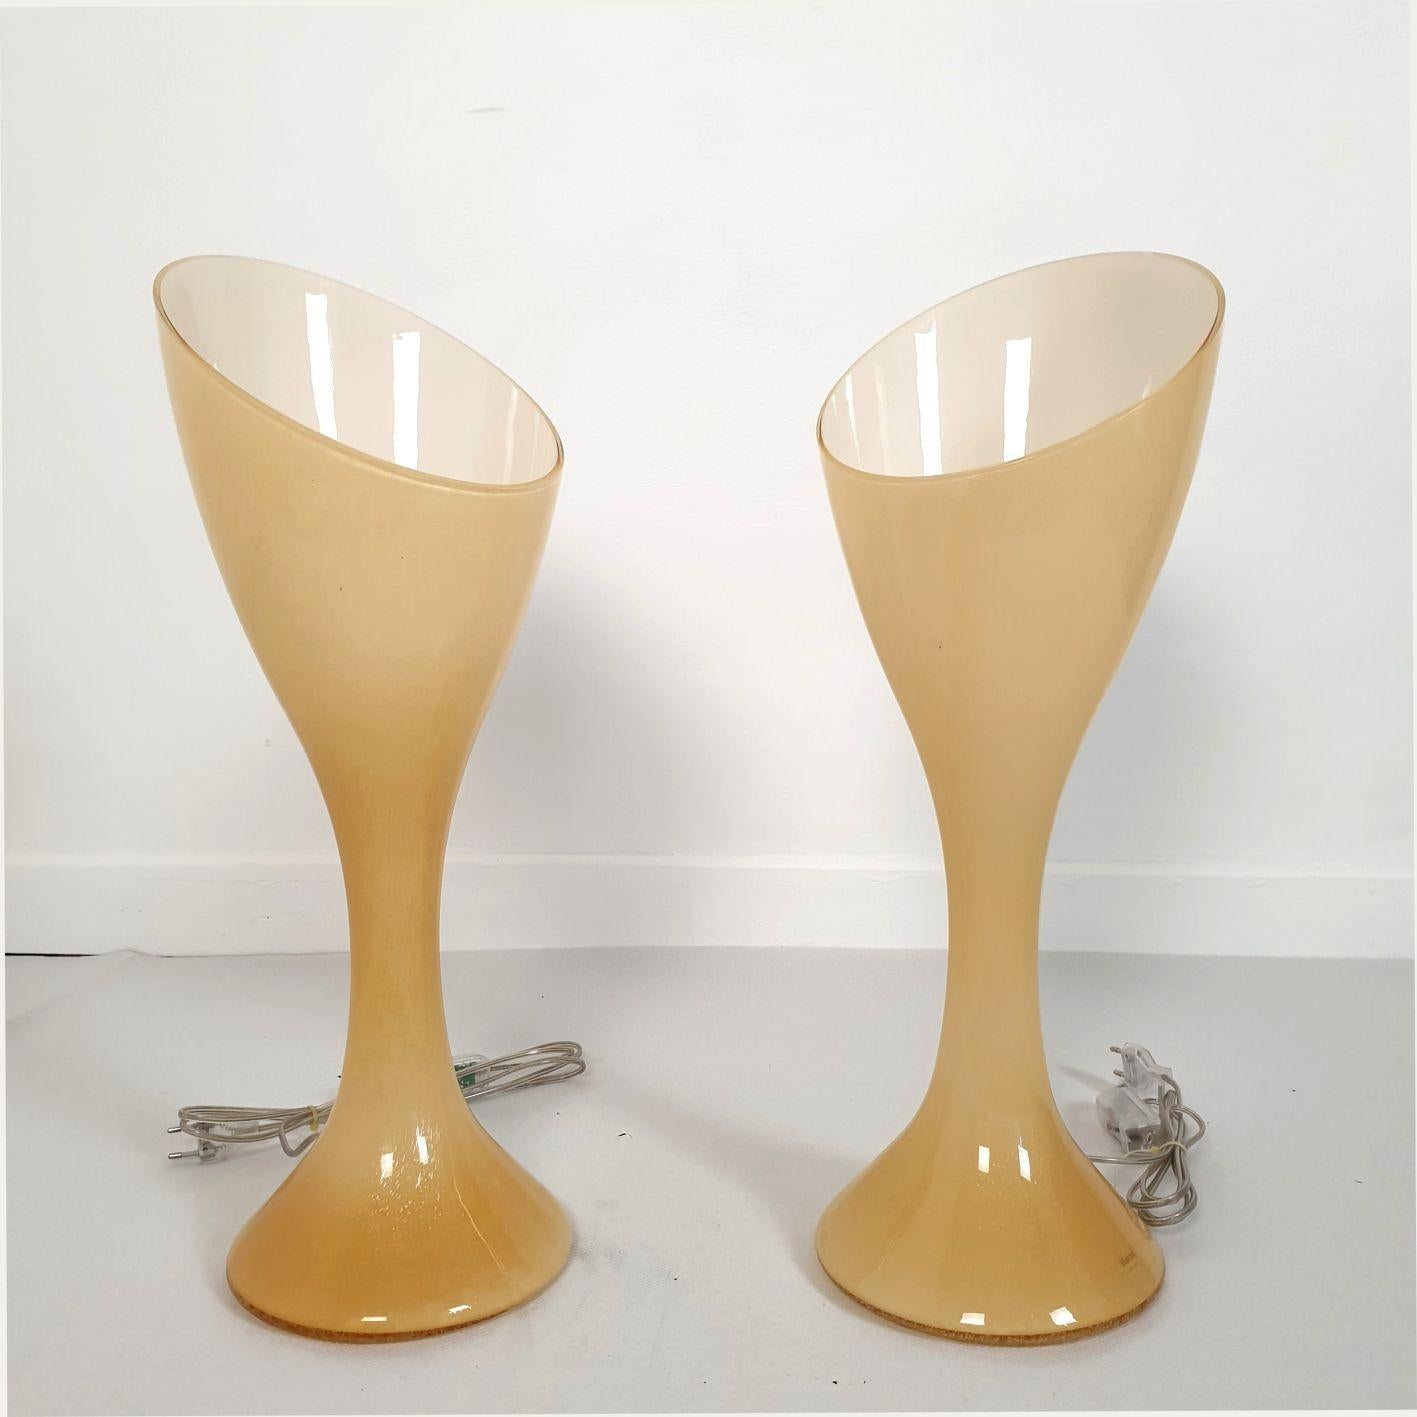 Paar beigefarbene Tischlampen aus Murano-Glas Mid Century Modern, gestempelt Vistosi, Italien 1980er Jahre.
Die Murano-Lampen bestehen aus doppelschichtigem Glas: außen beige und innen weiß.
Sie haben eine organische Form, die ihnen einen modernen